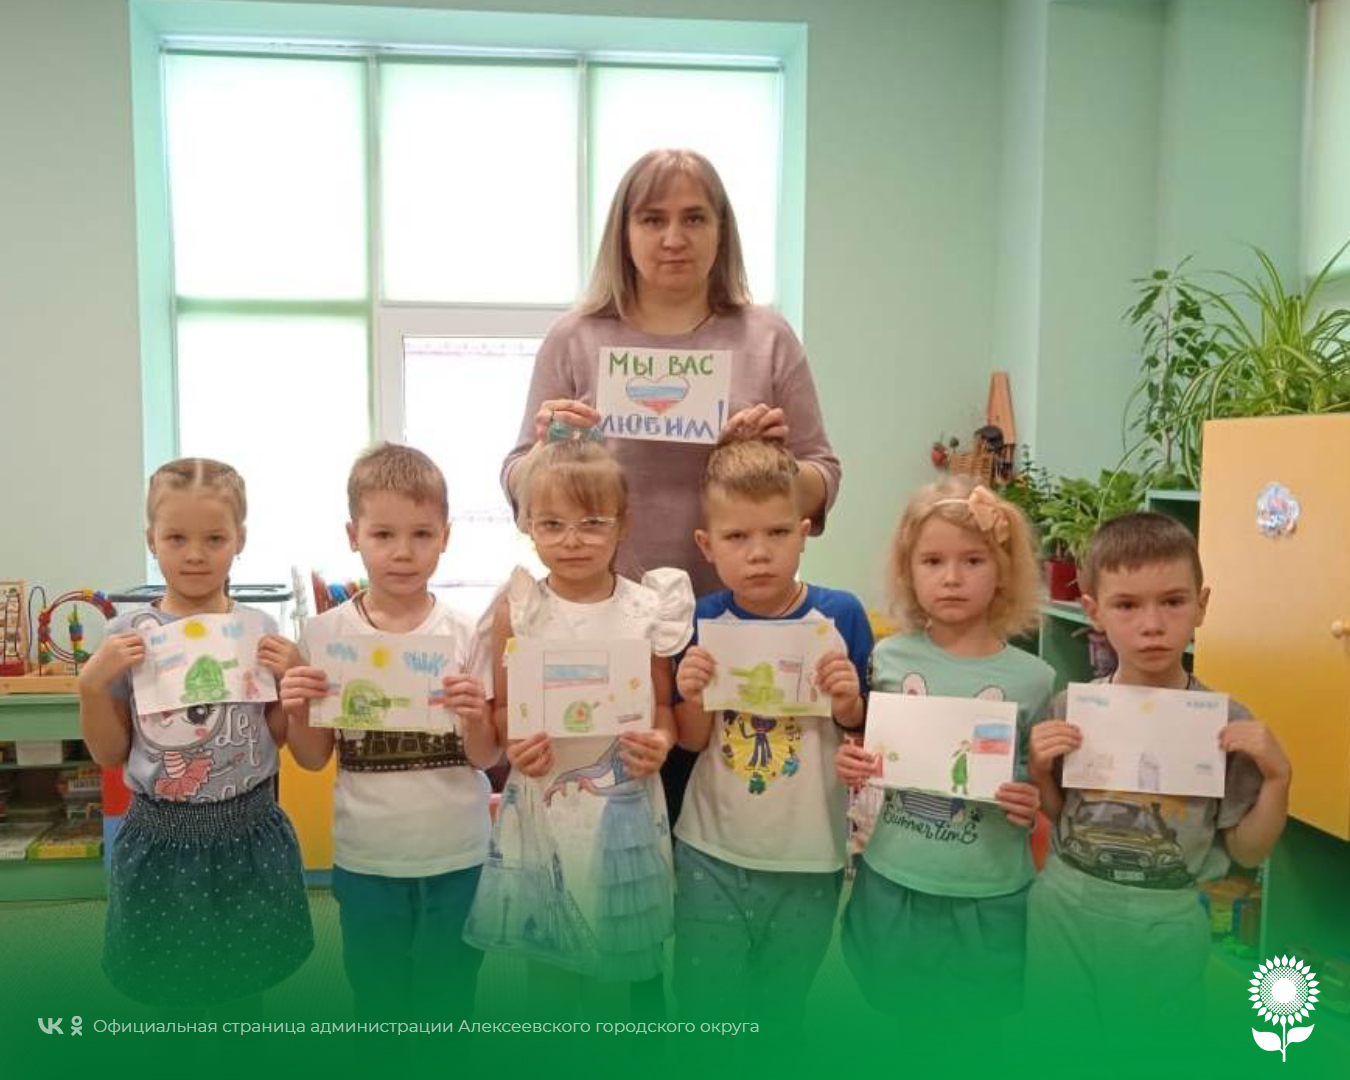 Педагоги и воспитанники детских садов округа приняли участие в волонтерской акции «Своих не бросаем»  по сбору гуманитарной помощи и изготовлению поздравительных открыток для российских военных, участвующих в СВО.